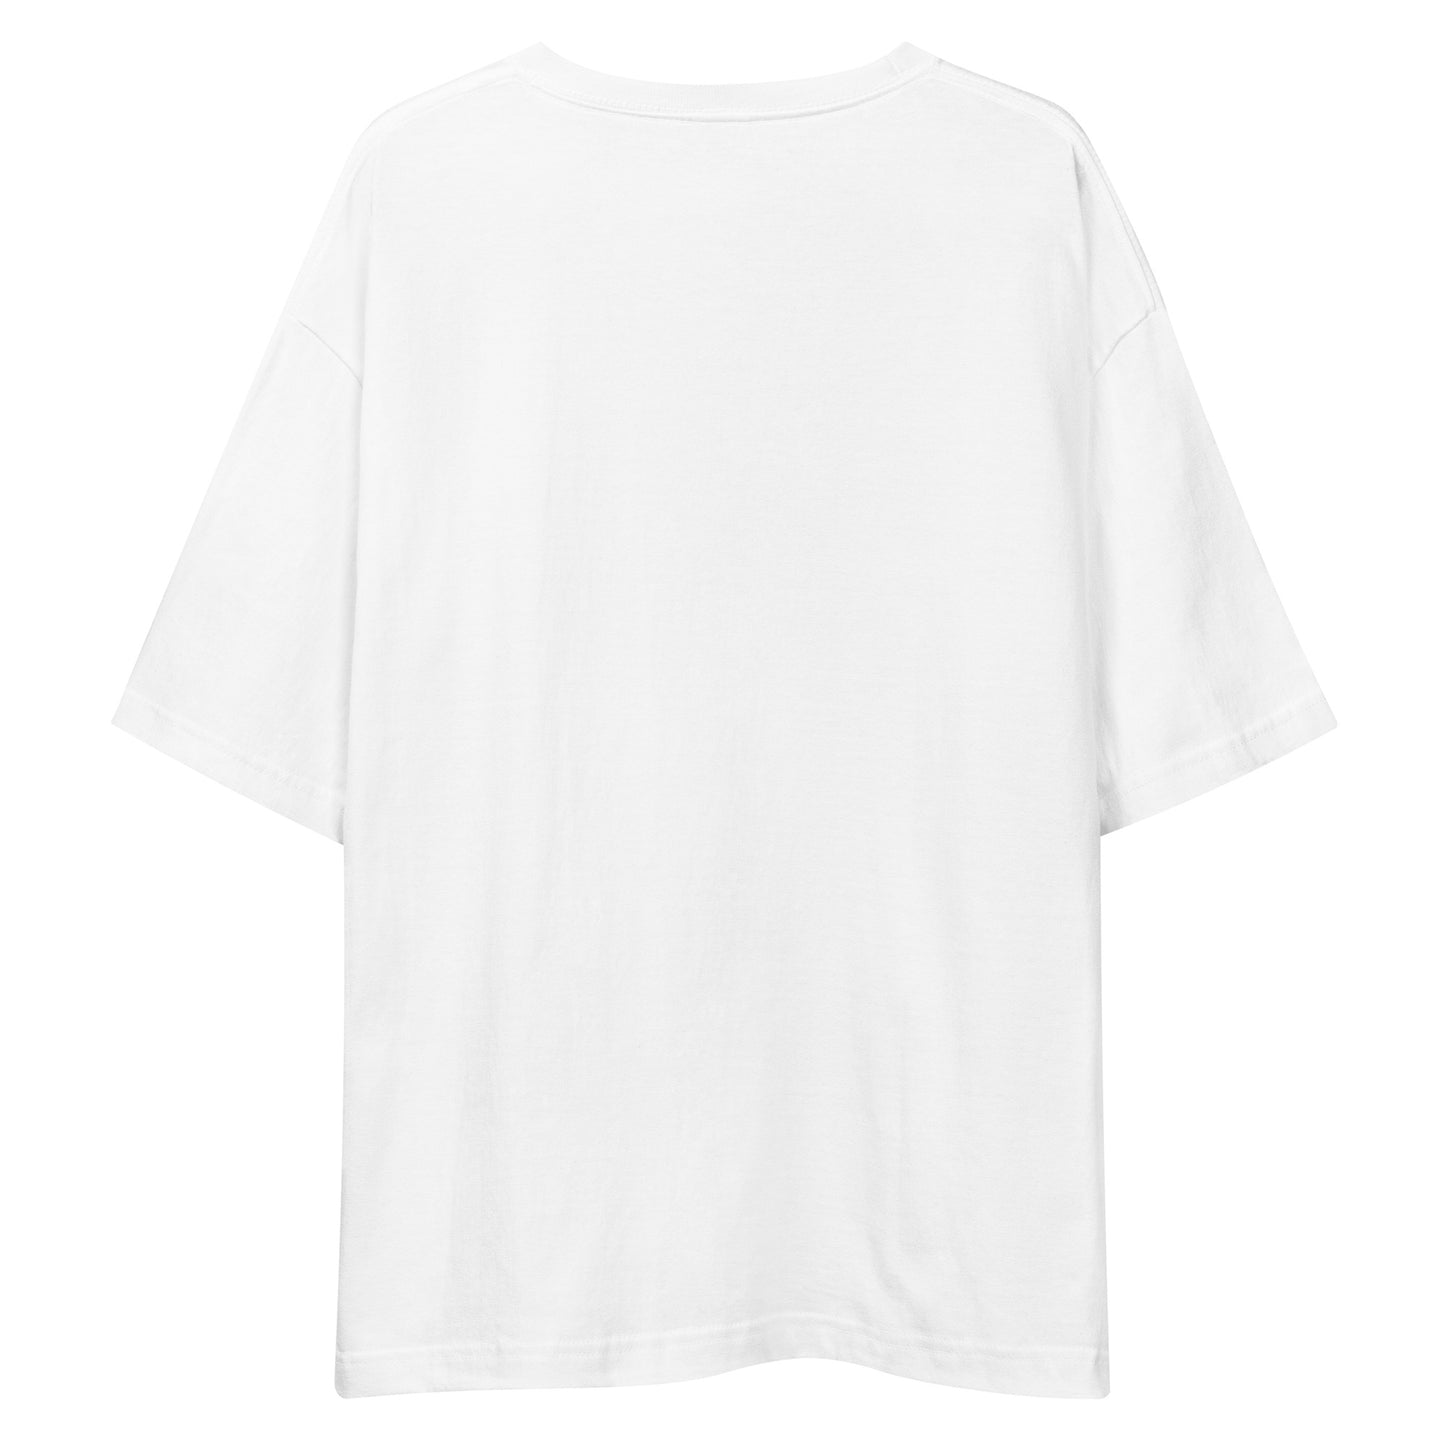 E246 - Kaos/Siluet besar (Kemenangan MX/wanita : Putih/Hitam)